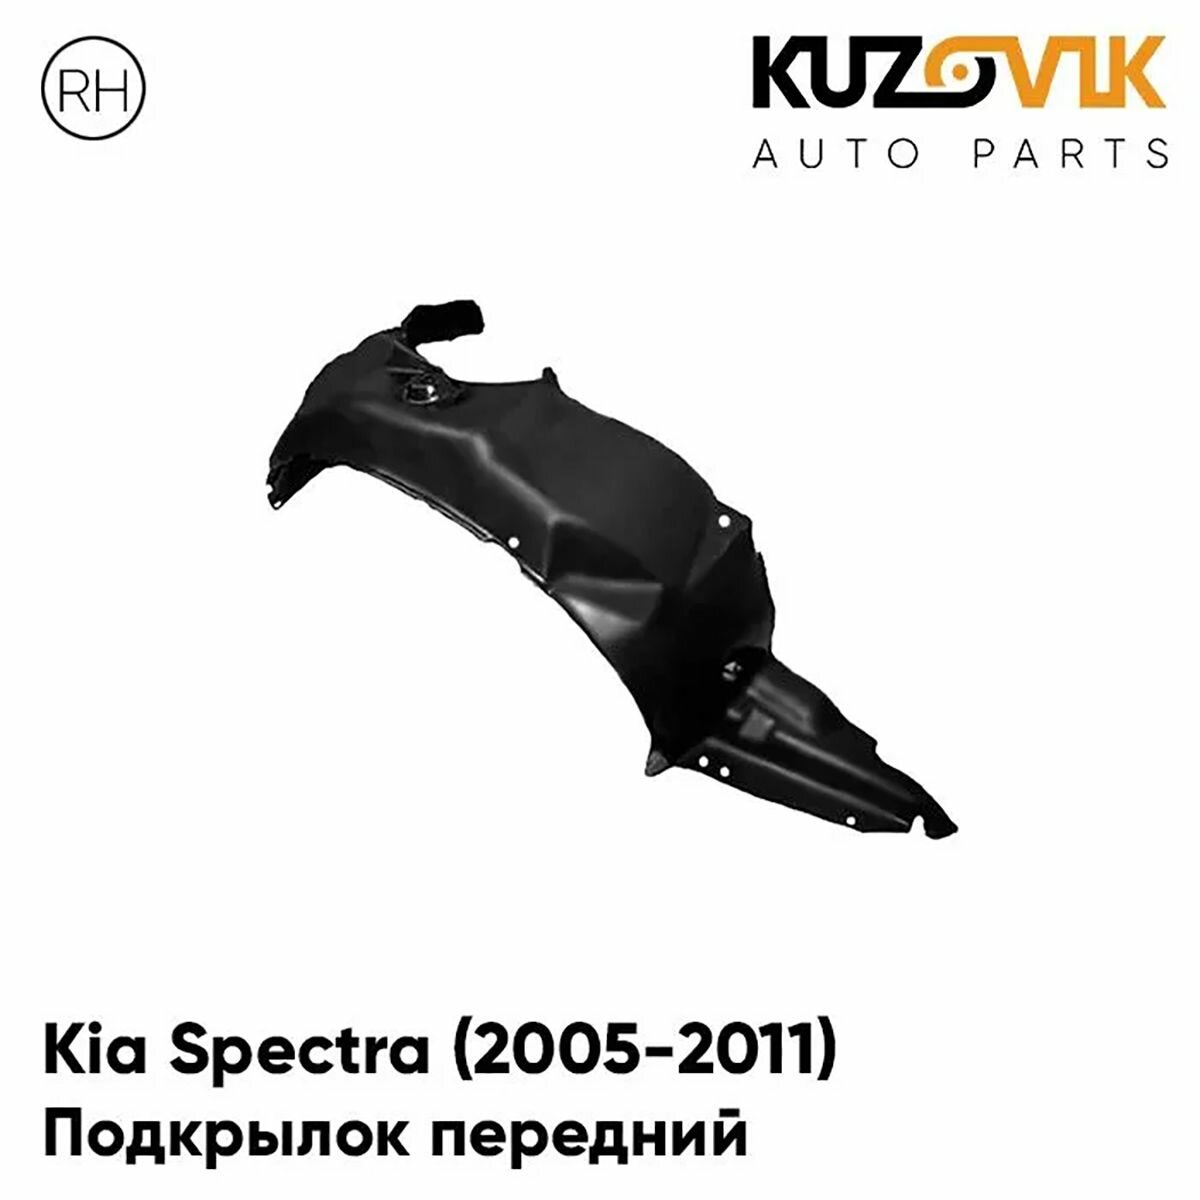 Подкрылок передний правый Kia Spectra (2005-2011)